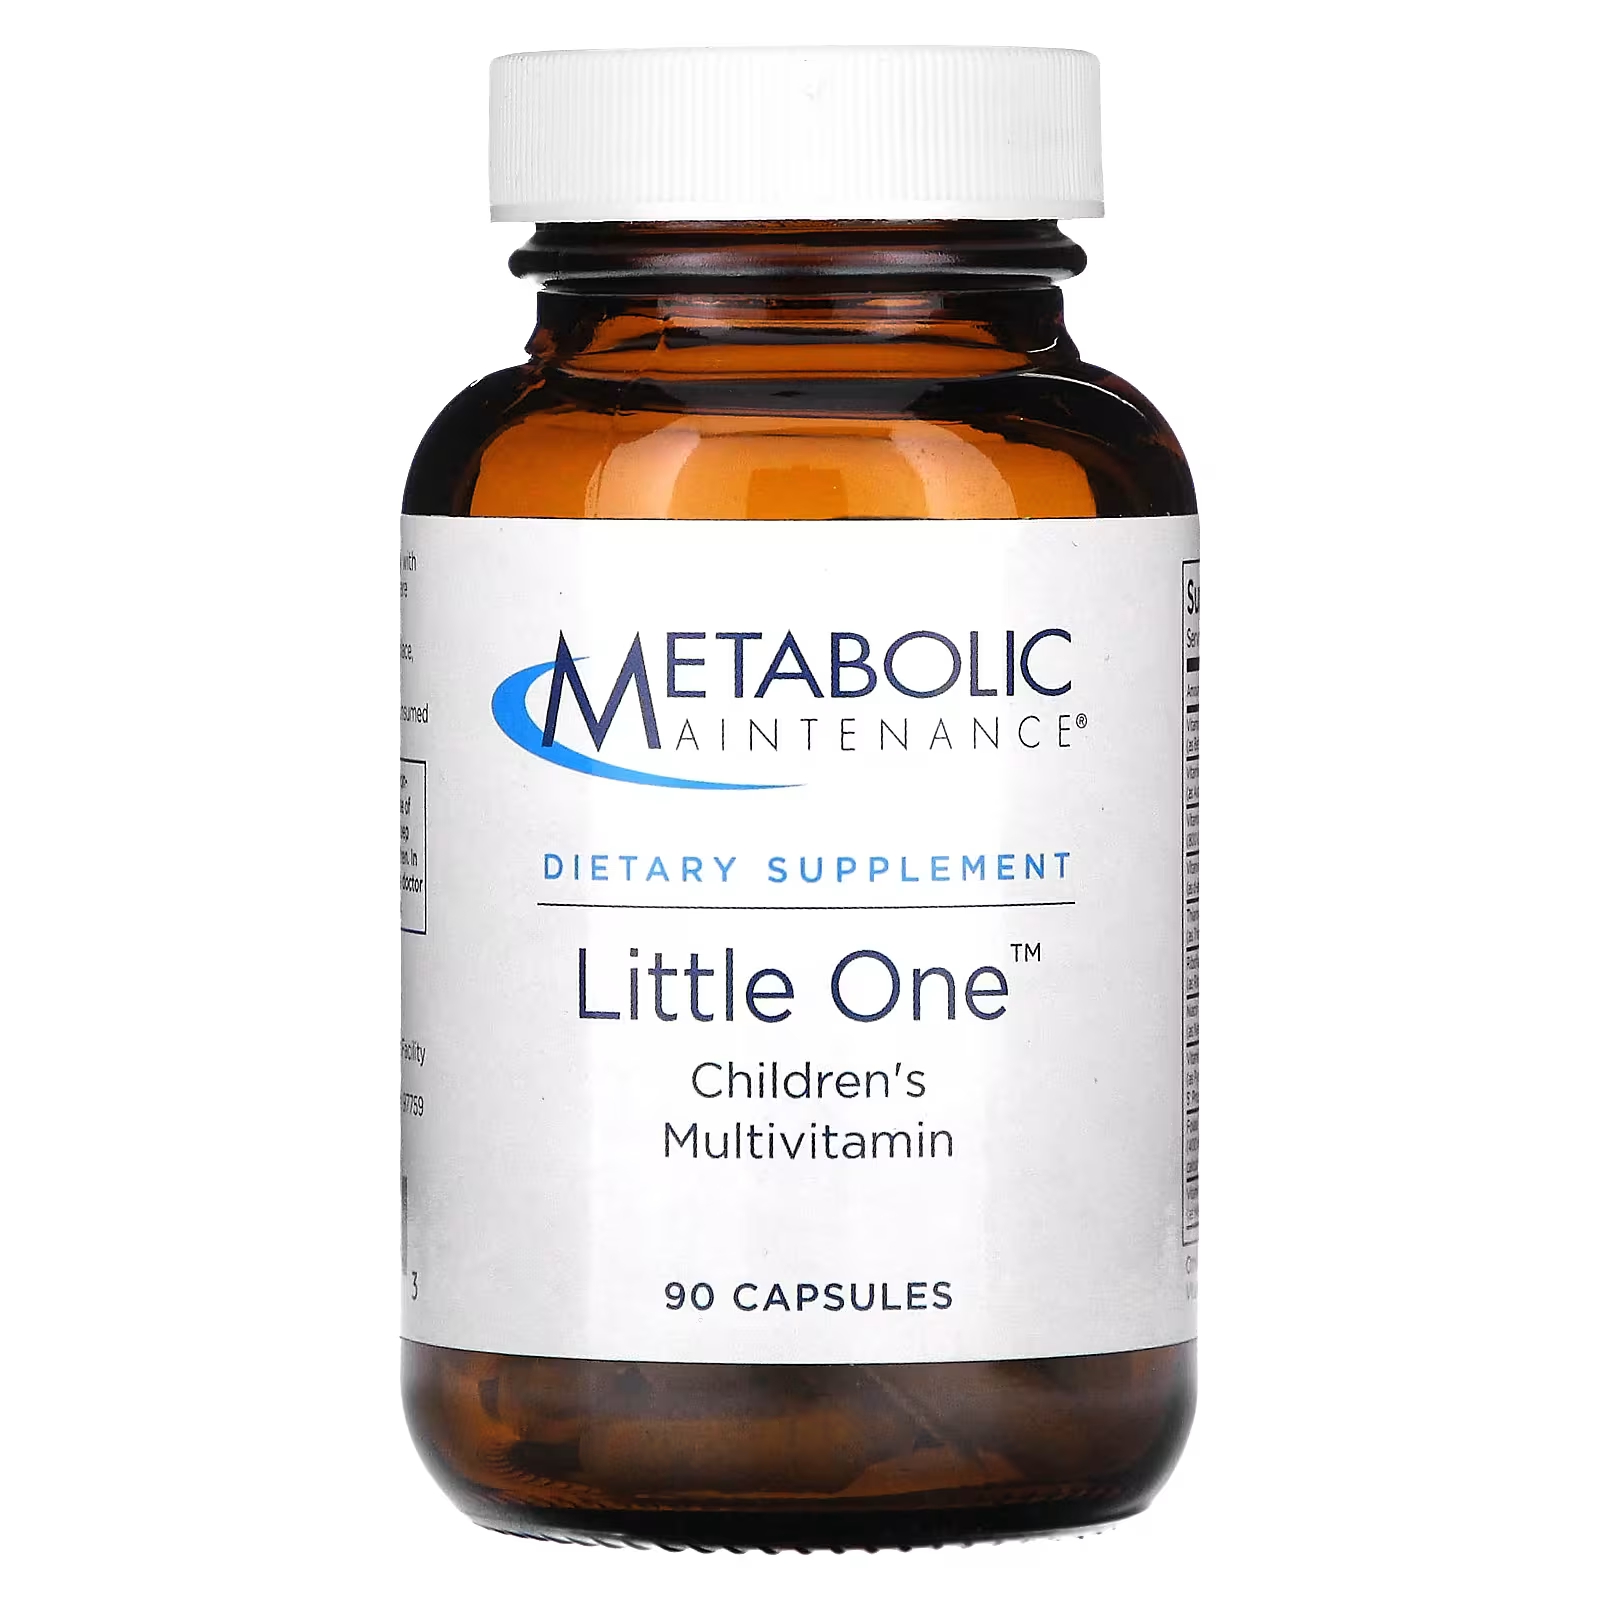 Мультивитамины детские Metabolic Maintenance Little One для поддержания метаболизма, 90 капсул мультивитамины metabolic maintenance big one plus без железа 90 капсул